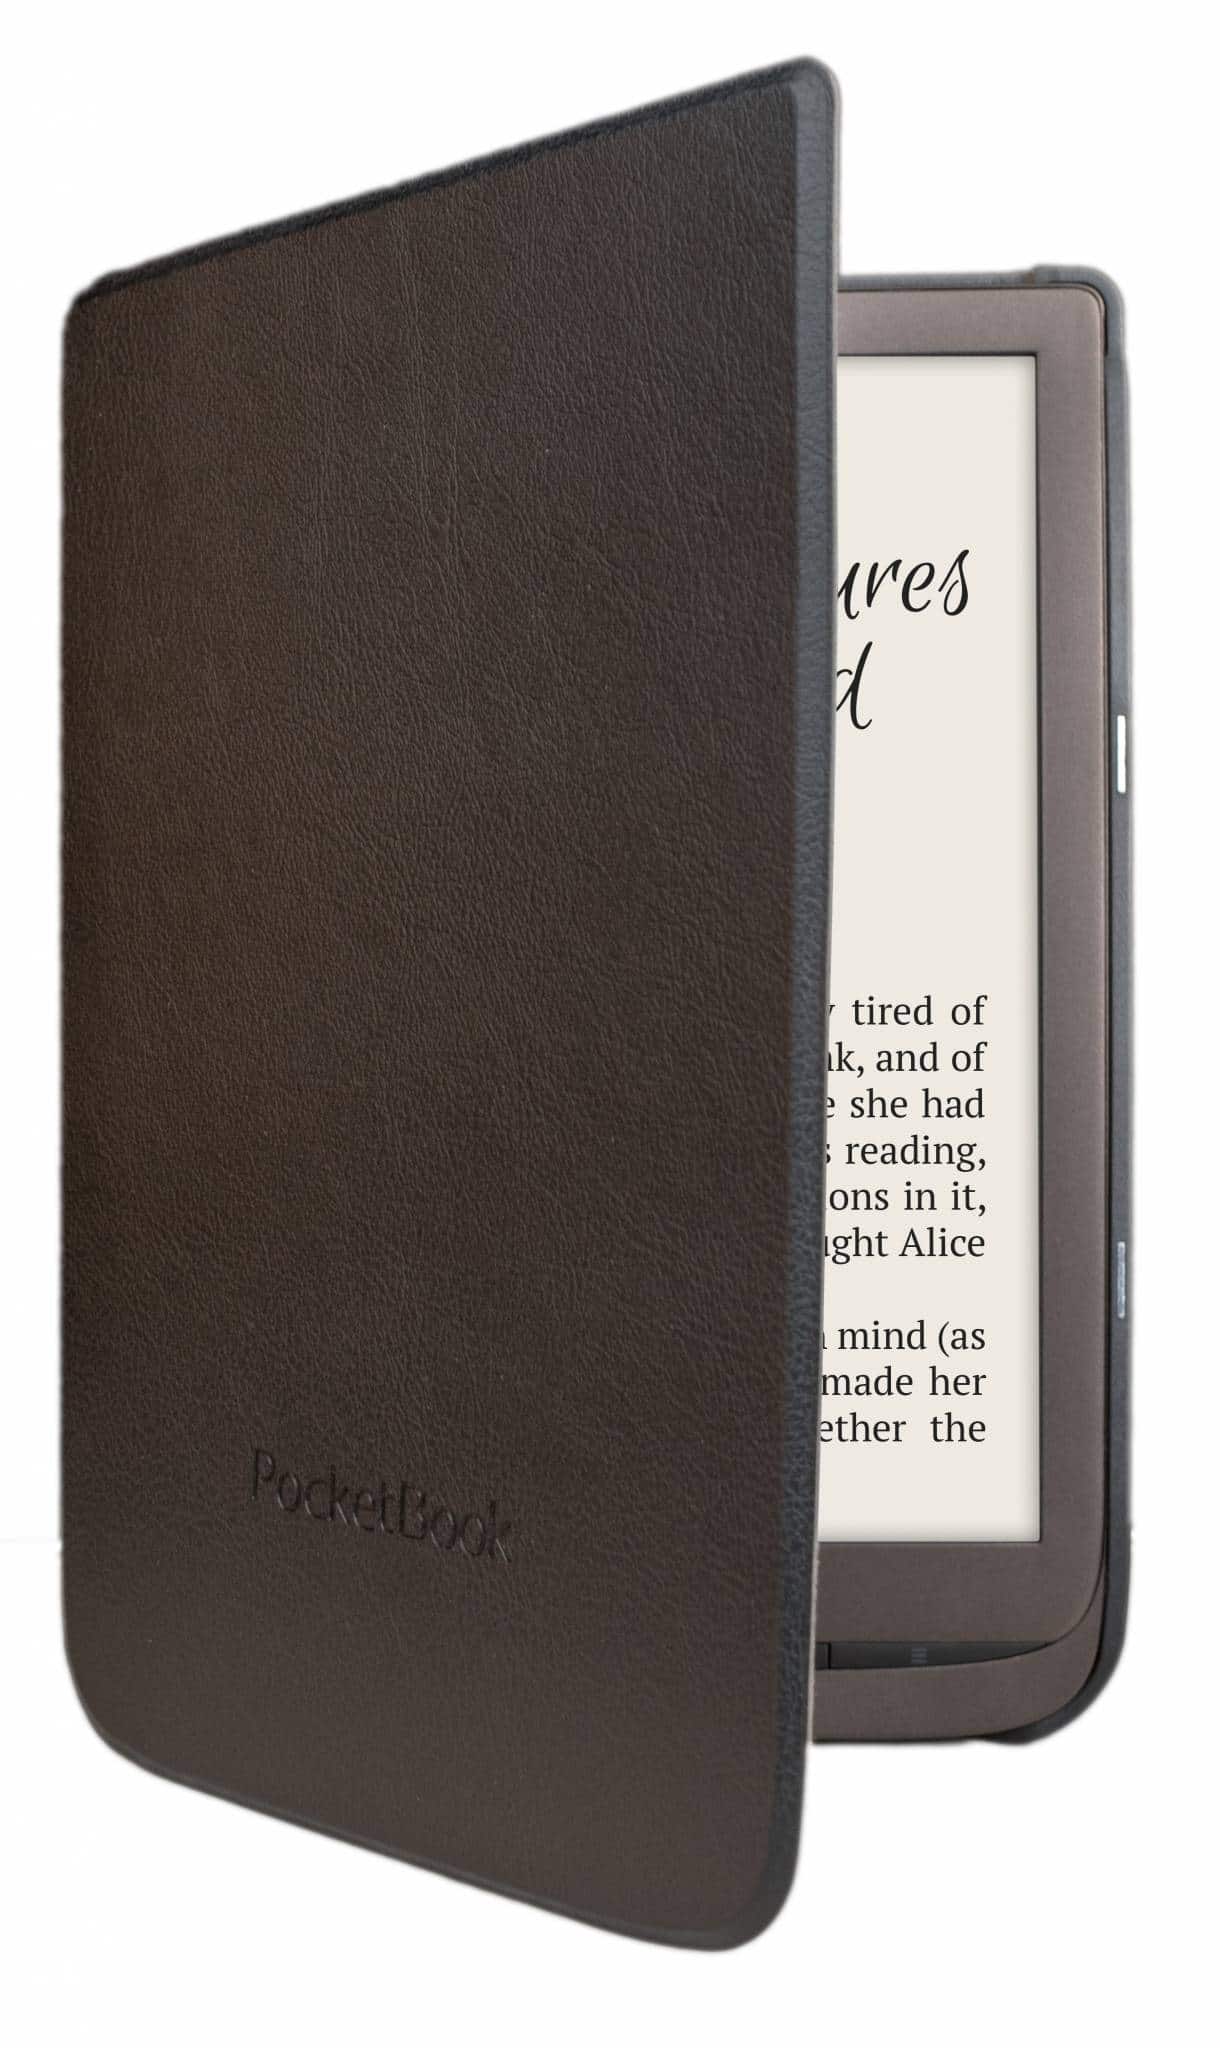 Pocketbook Inkpad 3 Pro Leather Case